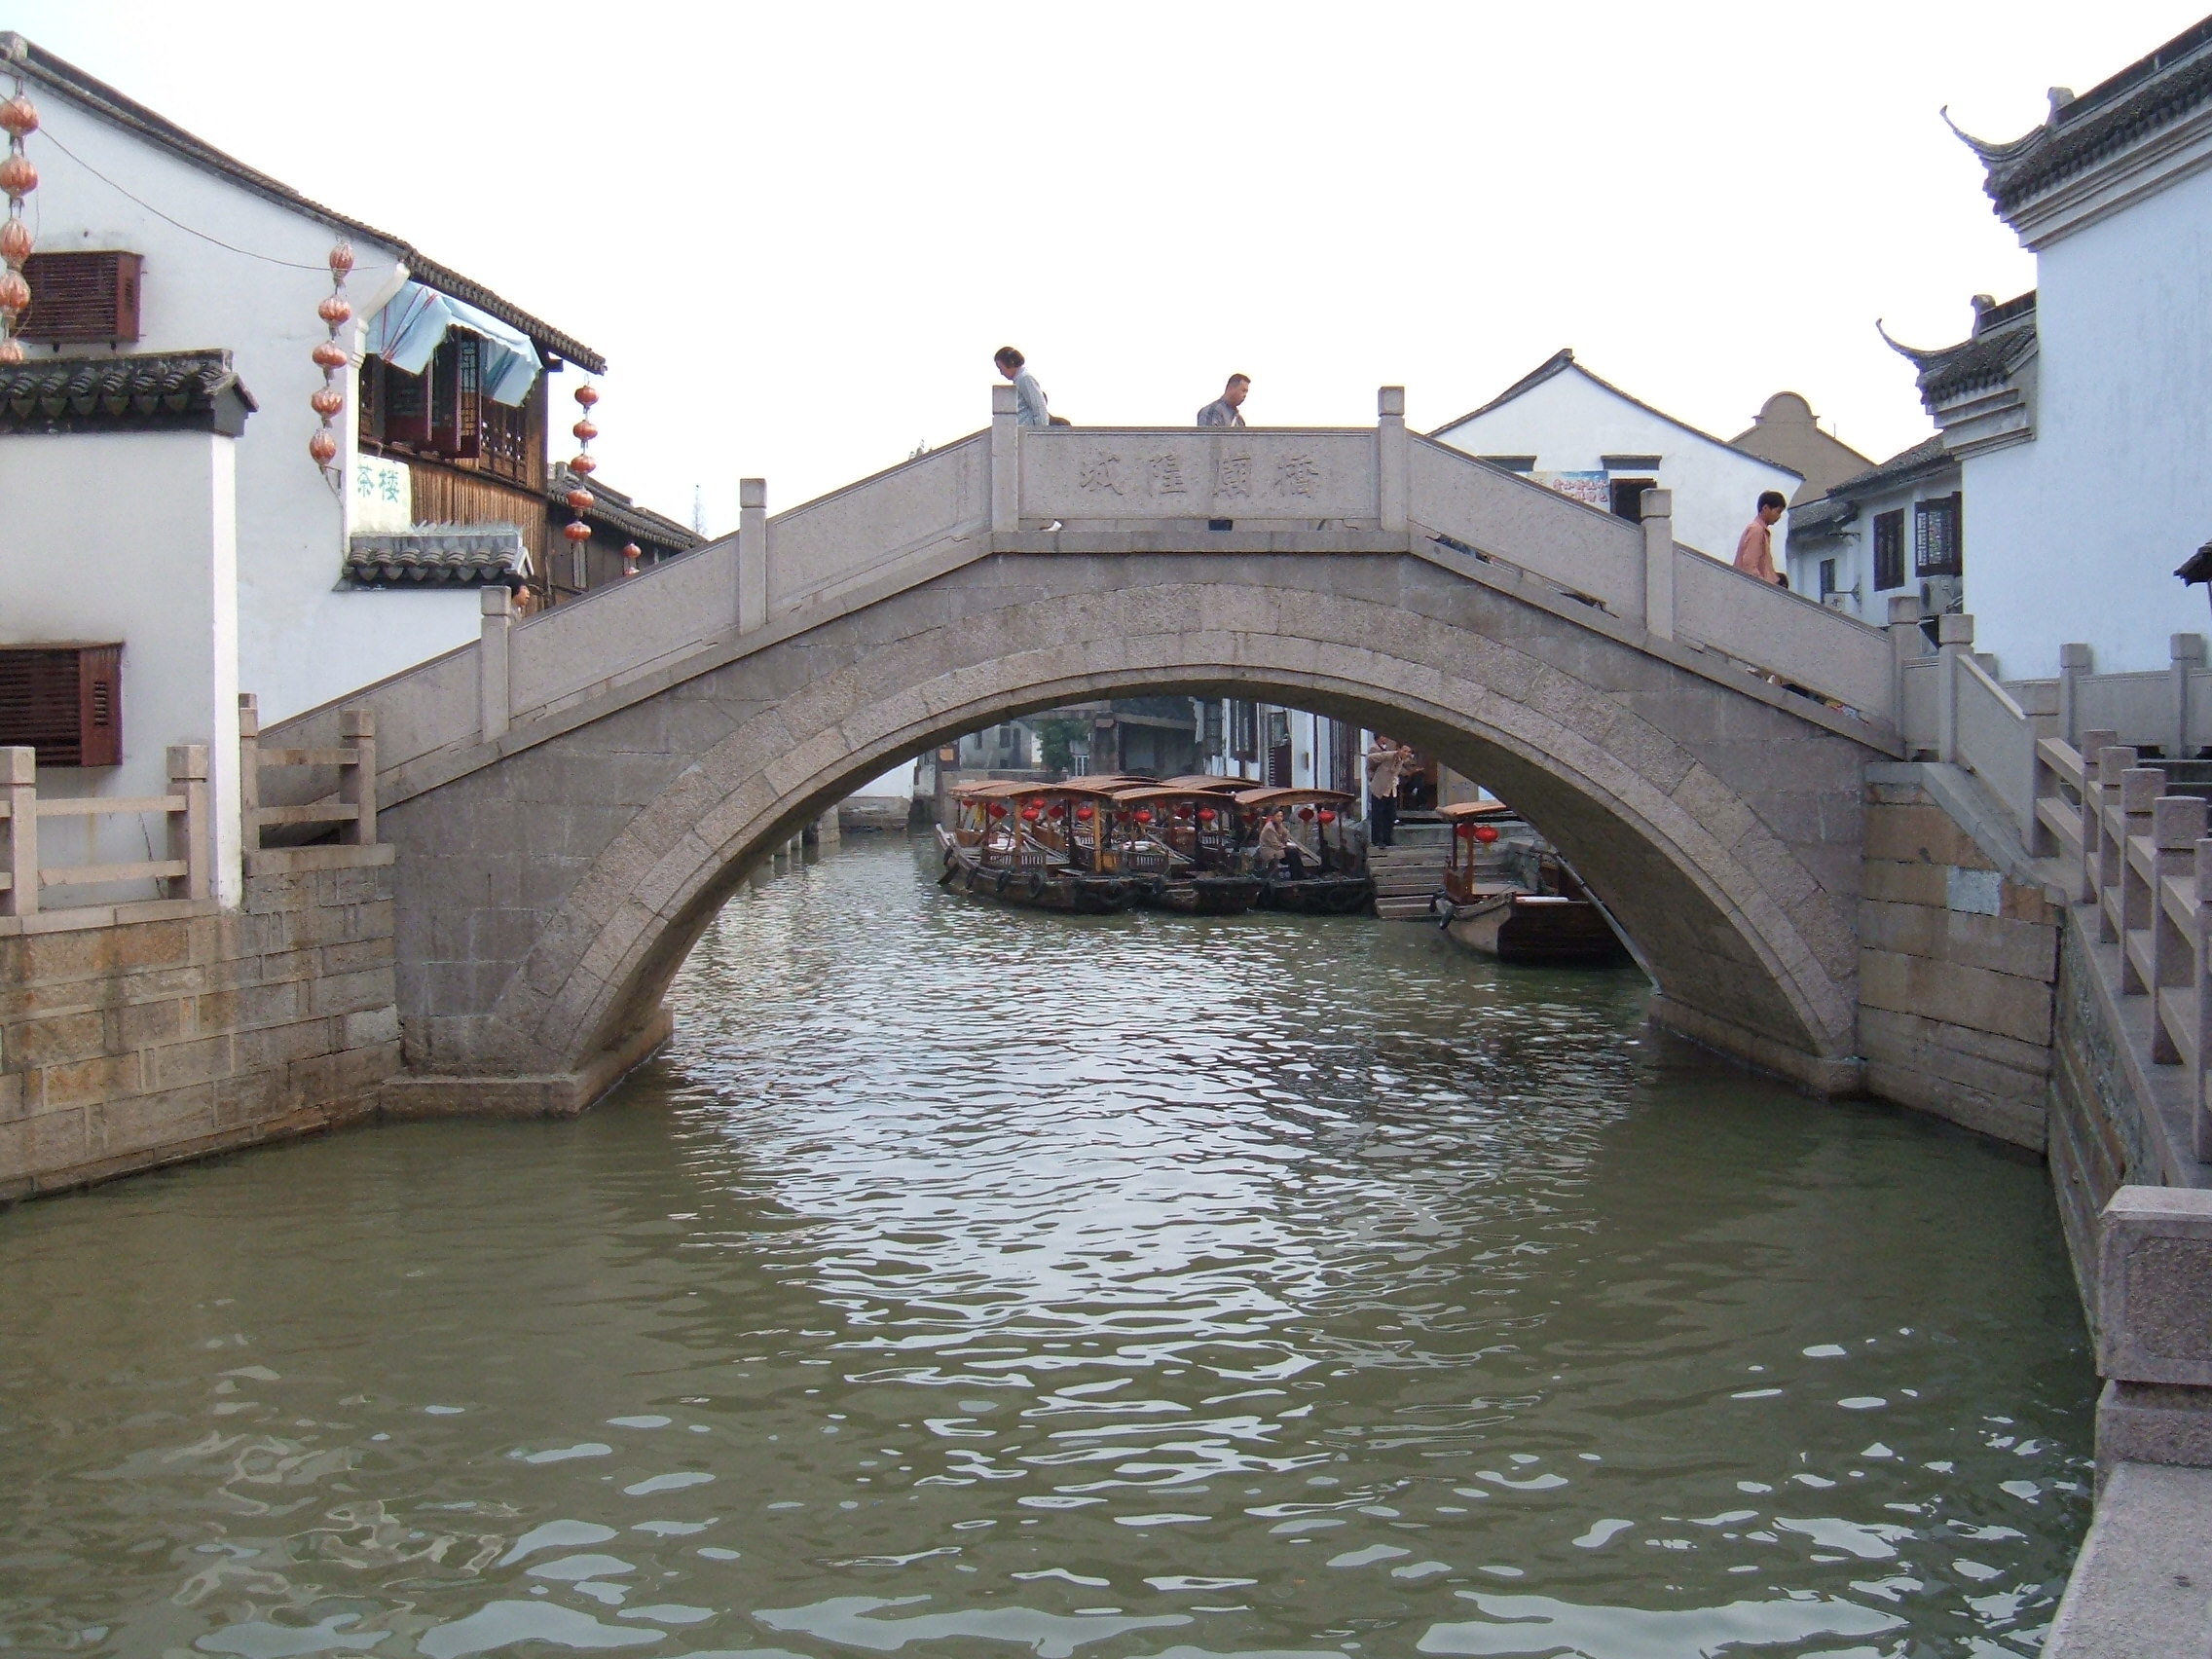 File:Zhujiajiao canal bridge.JPG - Wikimedia Commons